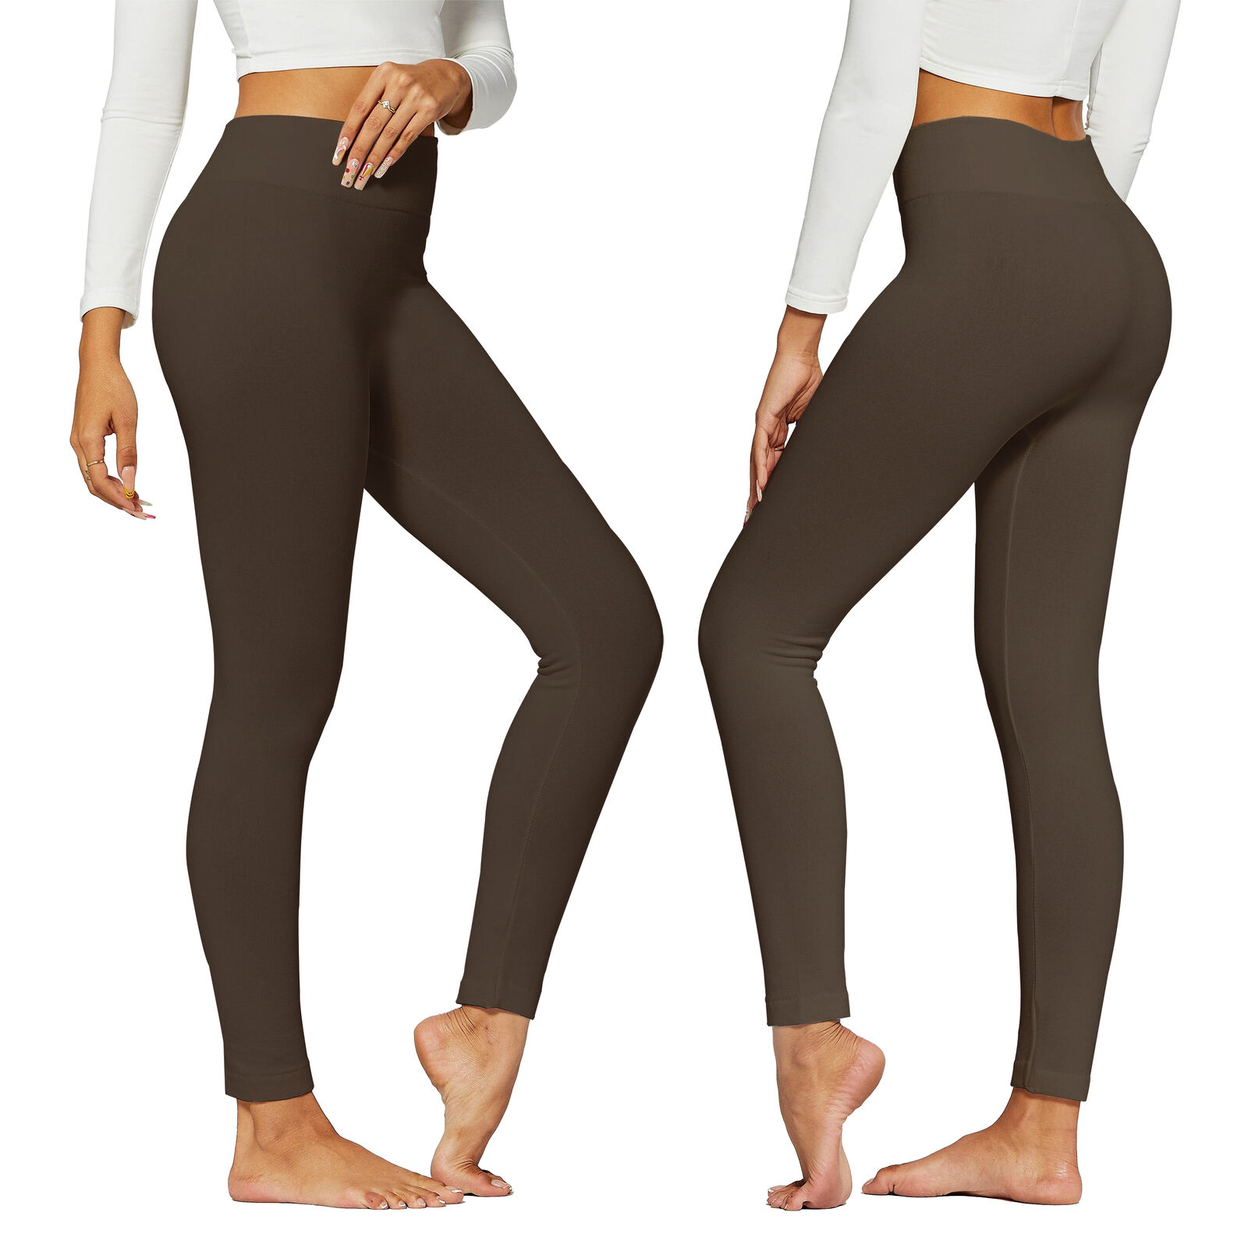 2-Pack: Women's Winter Warm High-Waist Soft Fleece Lined Leggings - Black & Grey, Medium